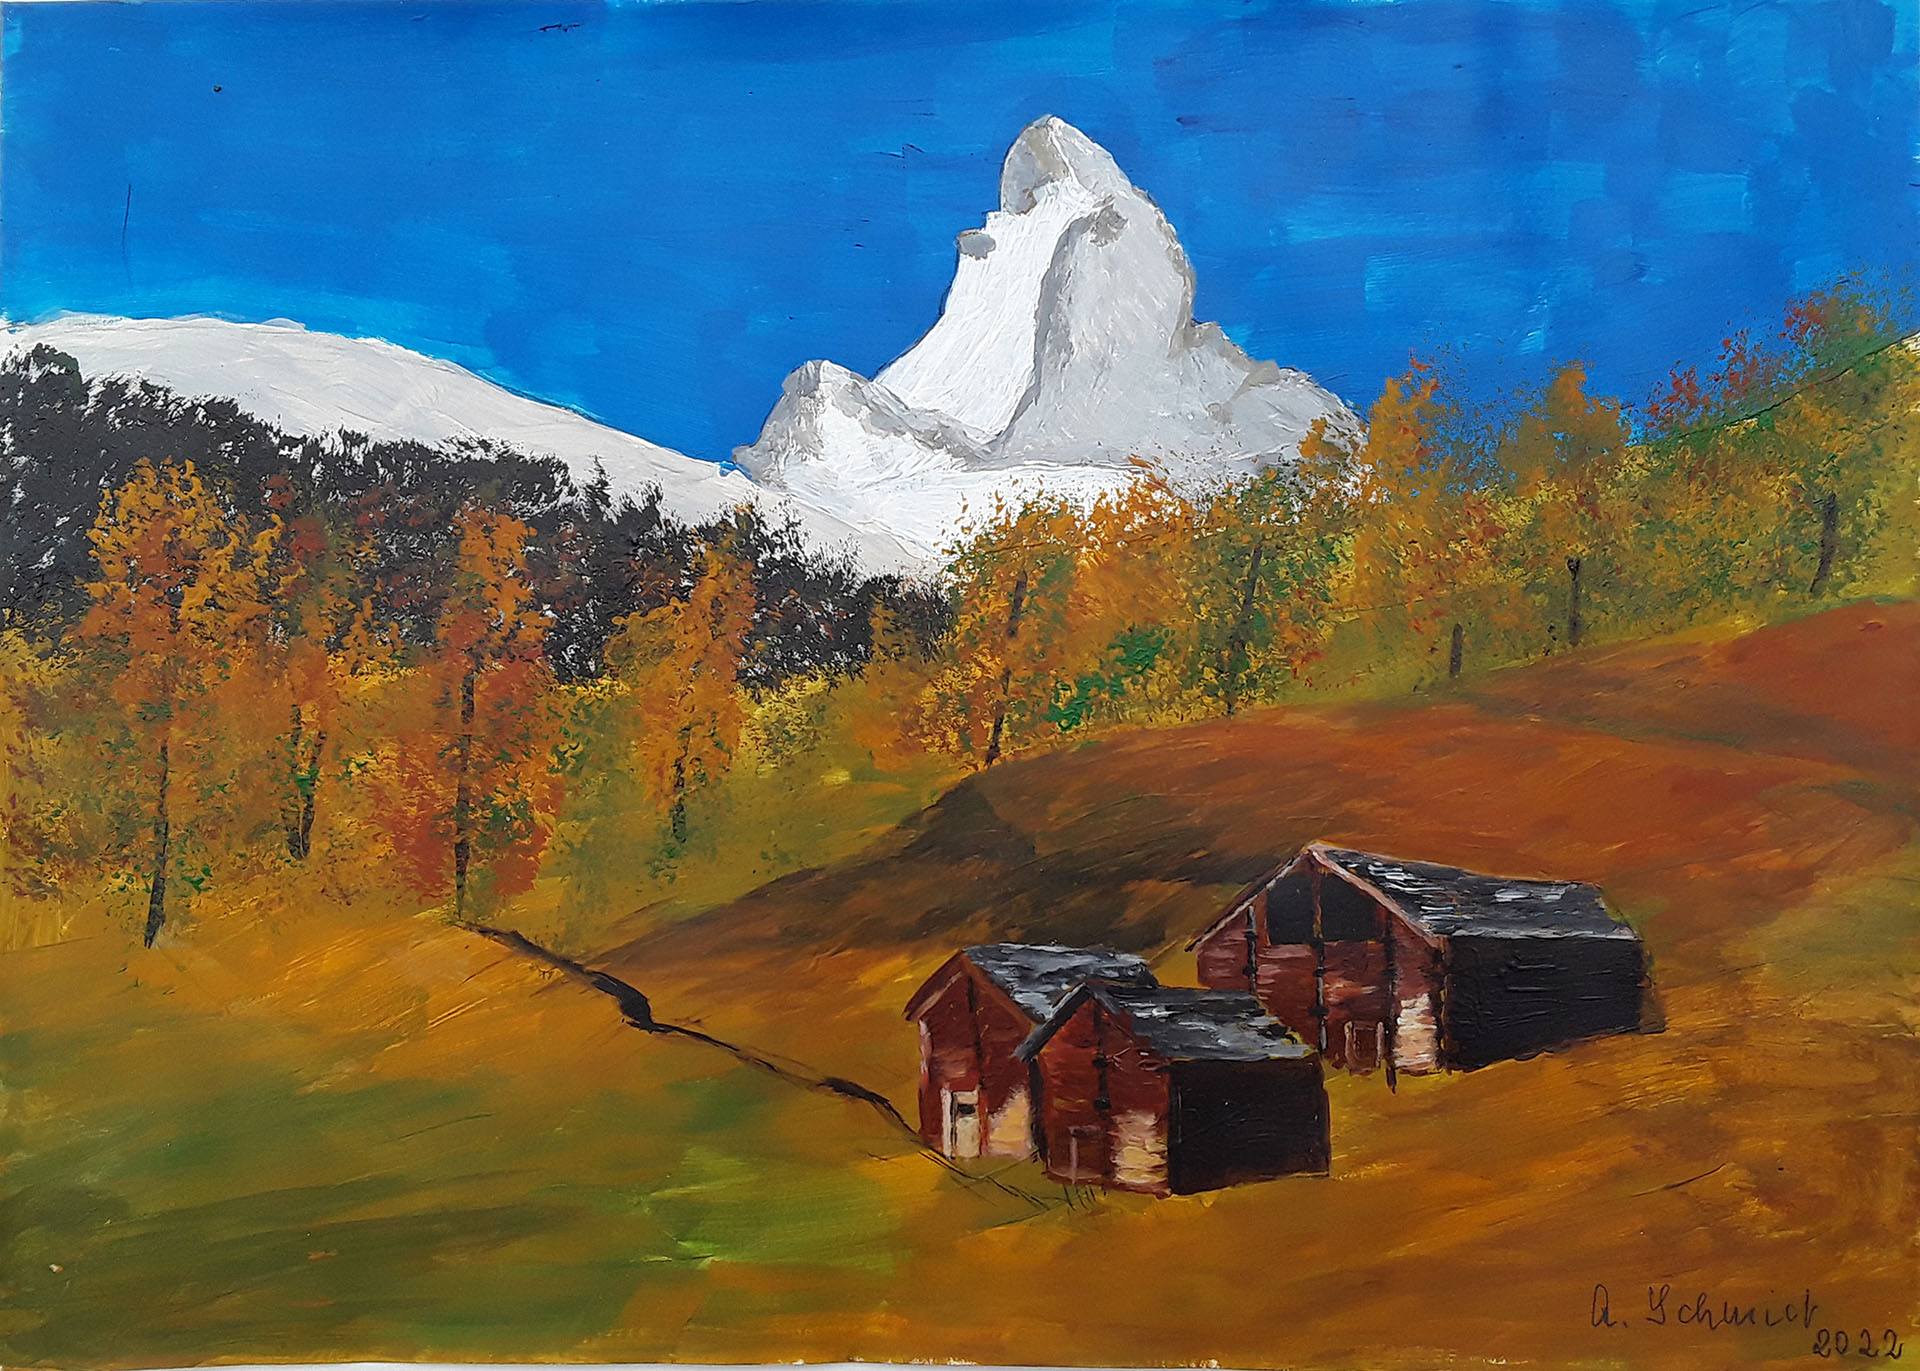 Gemälde von Annemarie Schmidt 2022 - Matterhorn